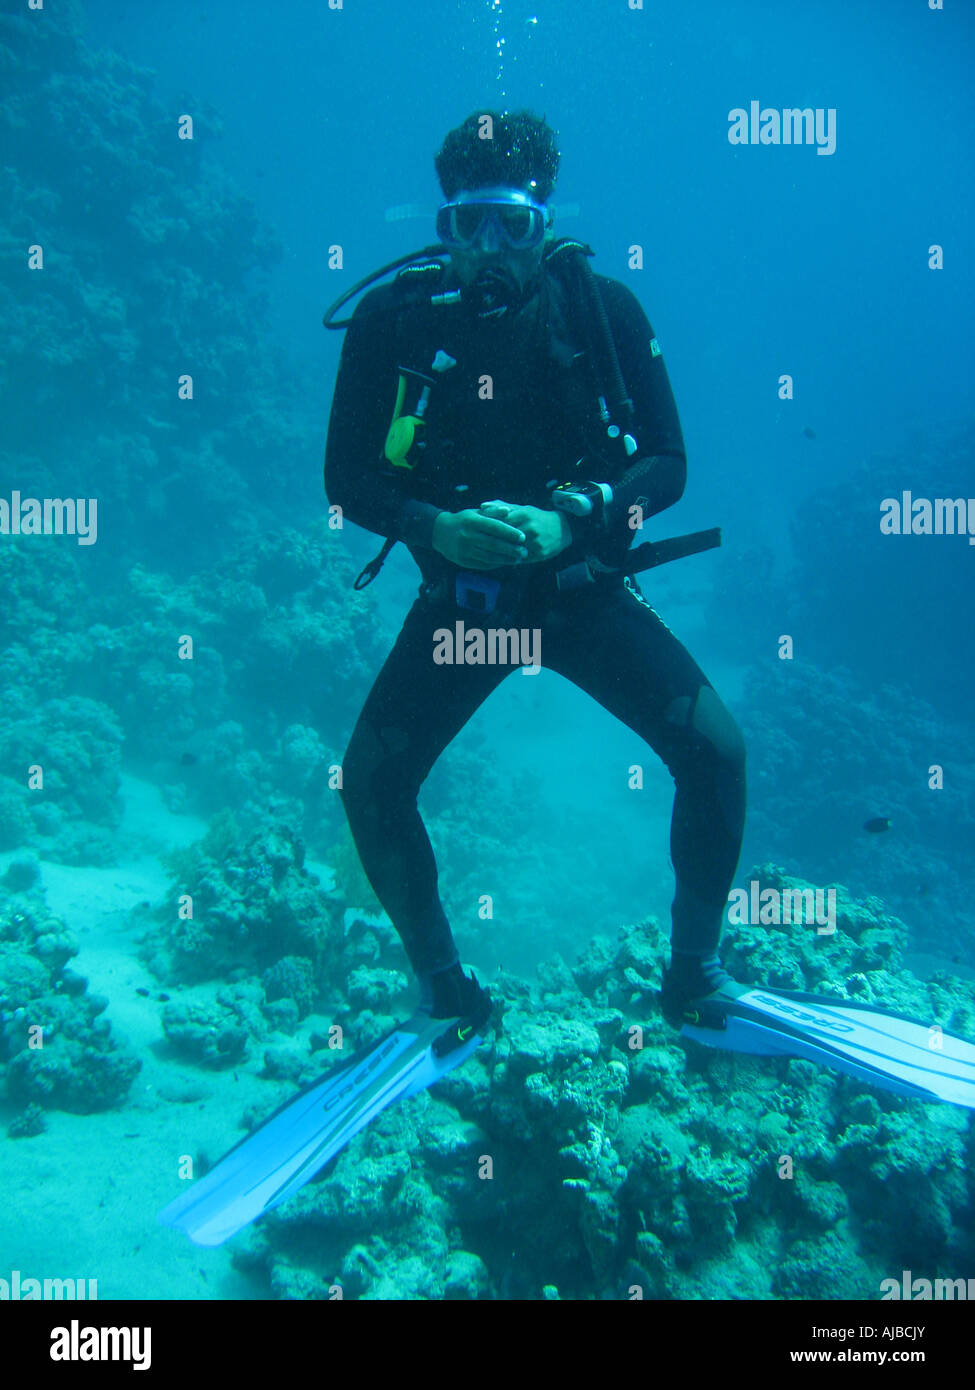 La subacquea Immagine di un subacqueo in Mar Rosso al faro sito di immersione nei pressi di Dahab Sinai Egitto Foto Stock